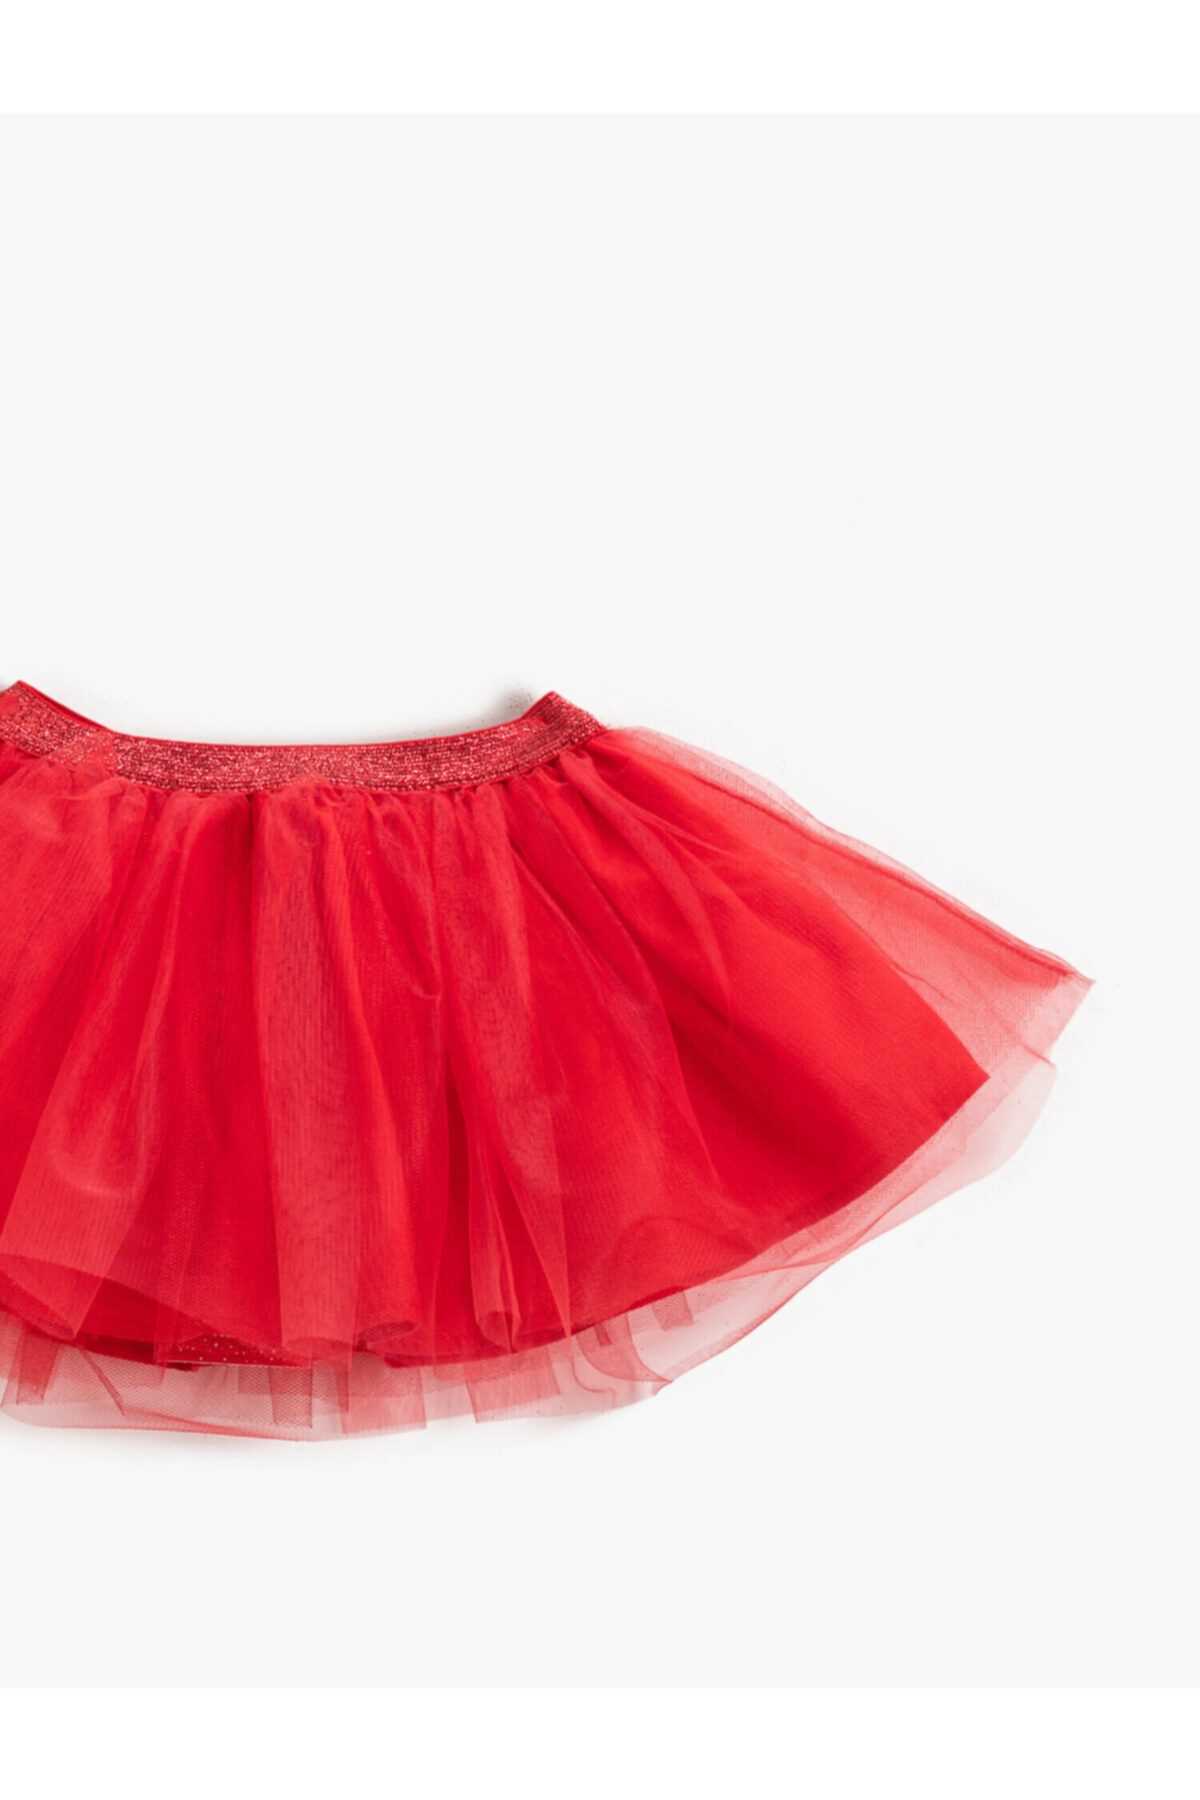 فروش دامن نوزاد دخترانه ارزانی برند کوتون رنگ قرمز ty187294936